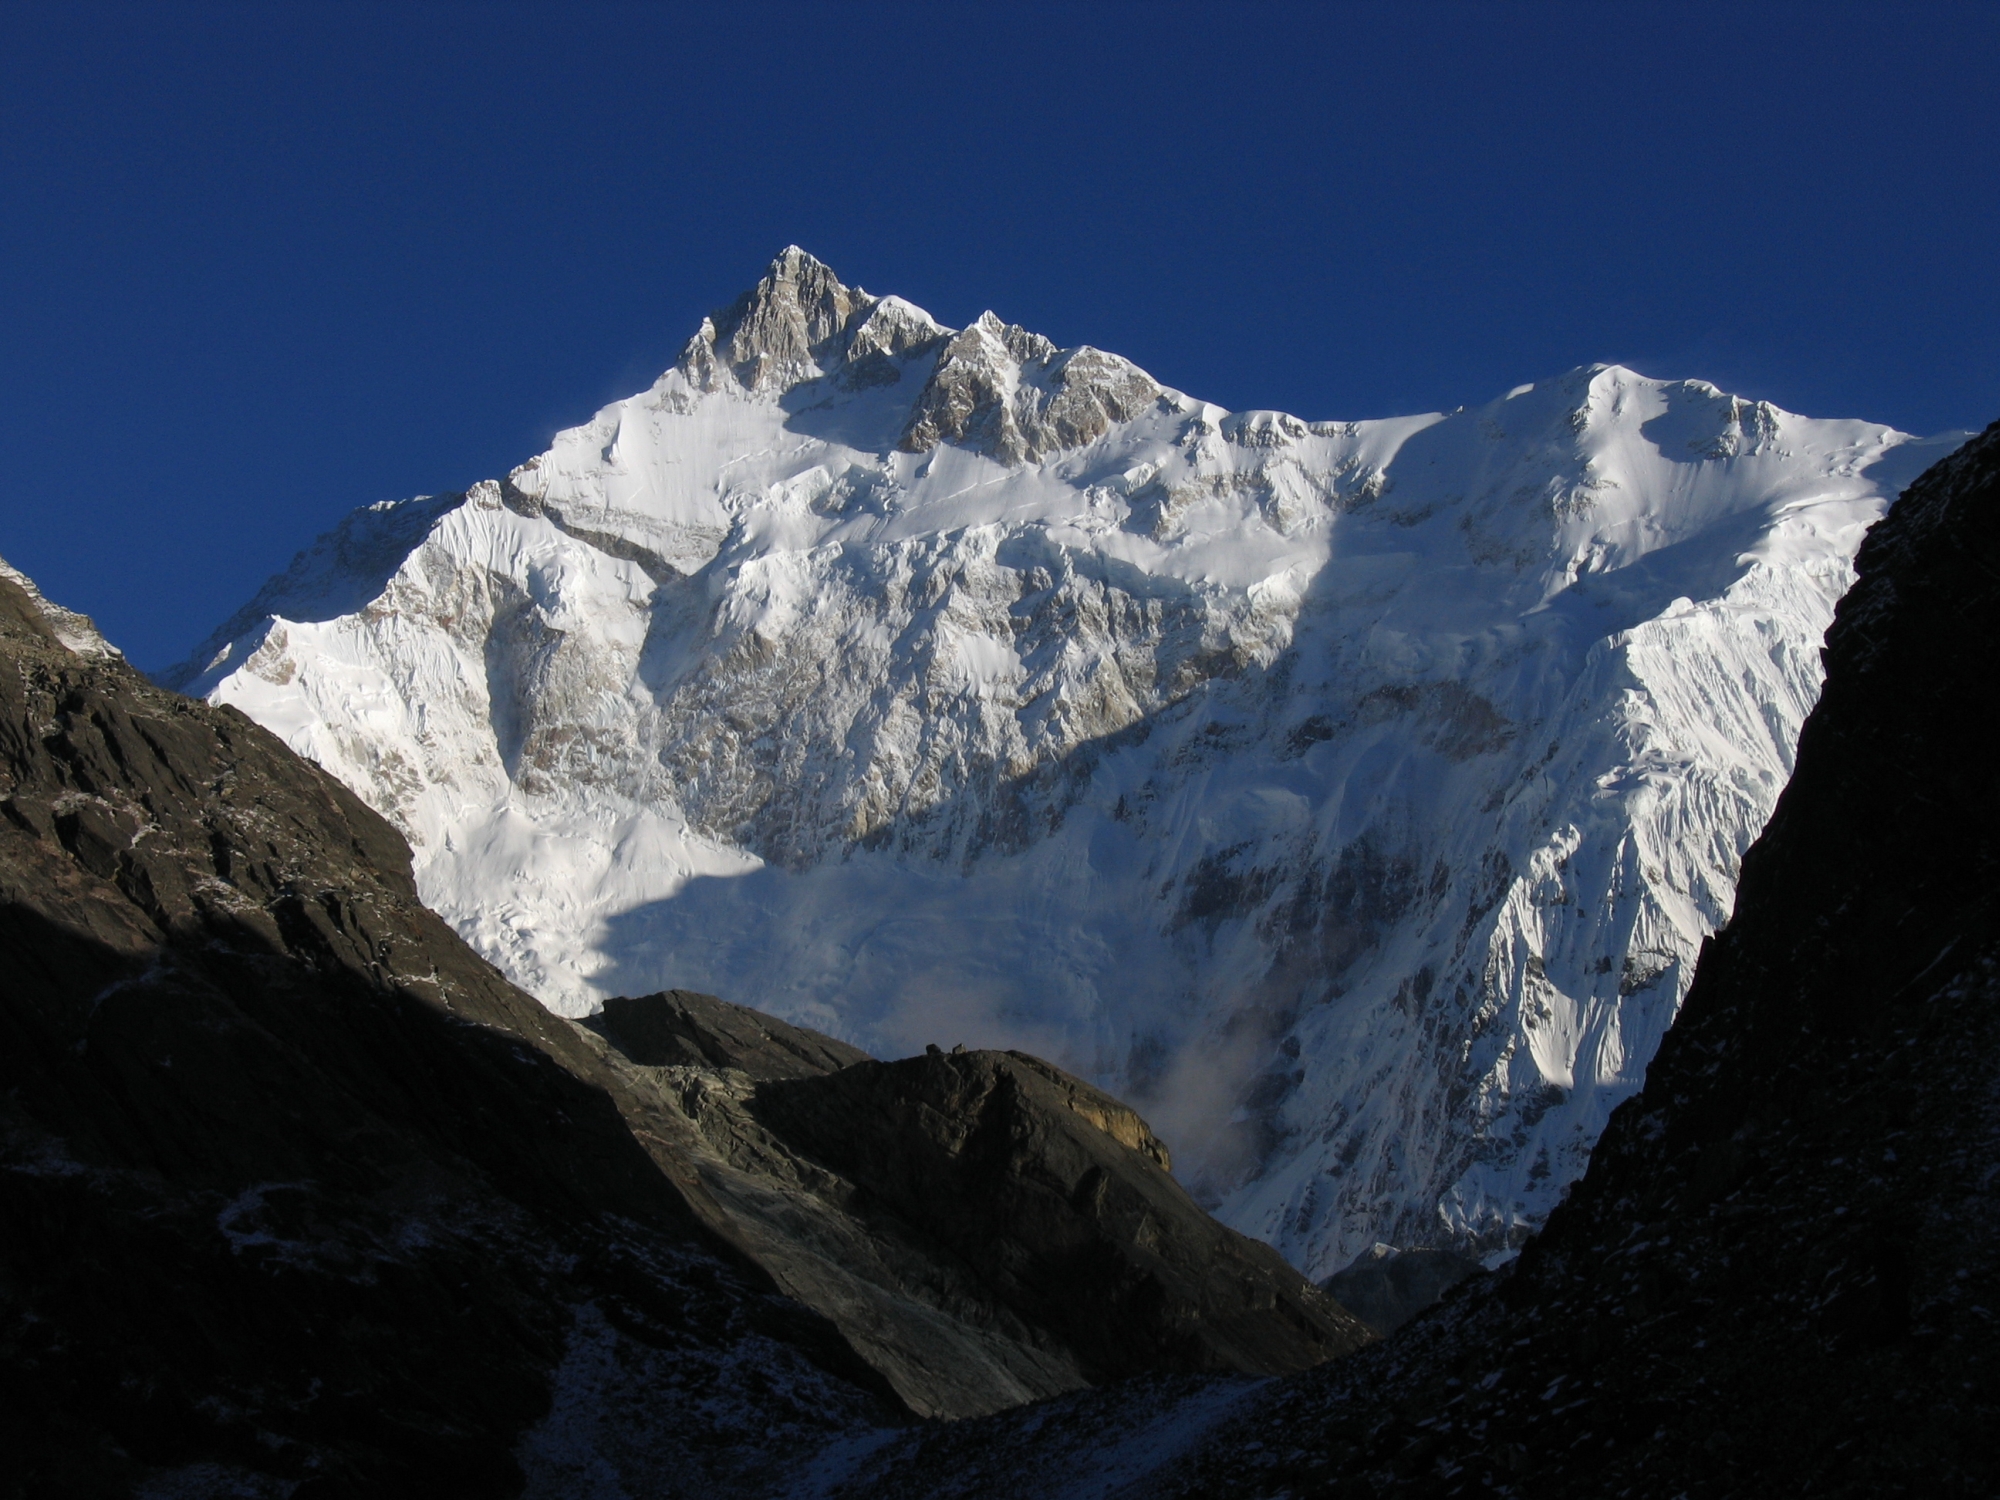  Восьмитысячник Канченджанга (Kangchenjunga), вид с перевала Goecha La (4,940 м) 